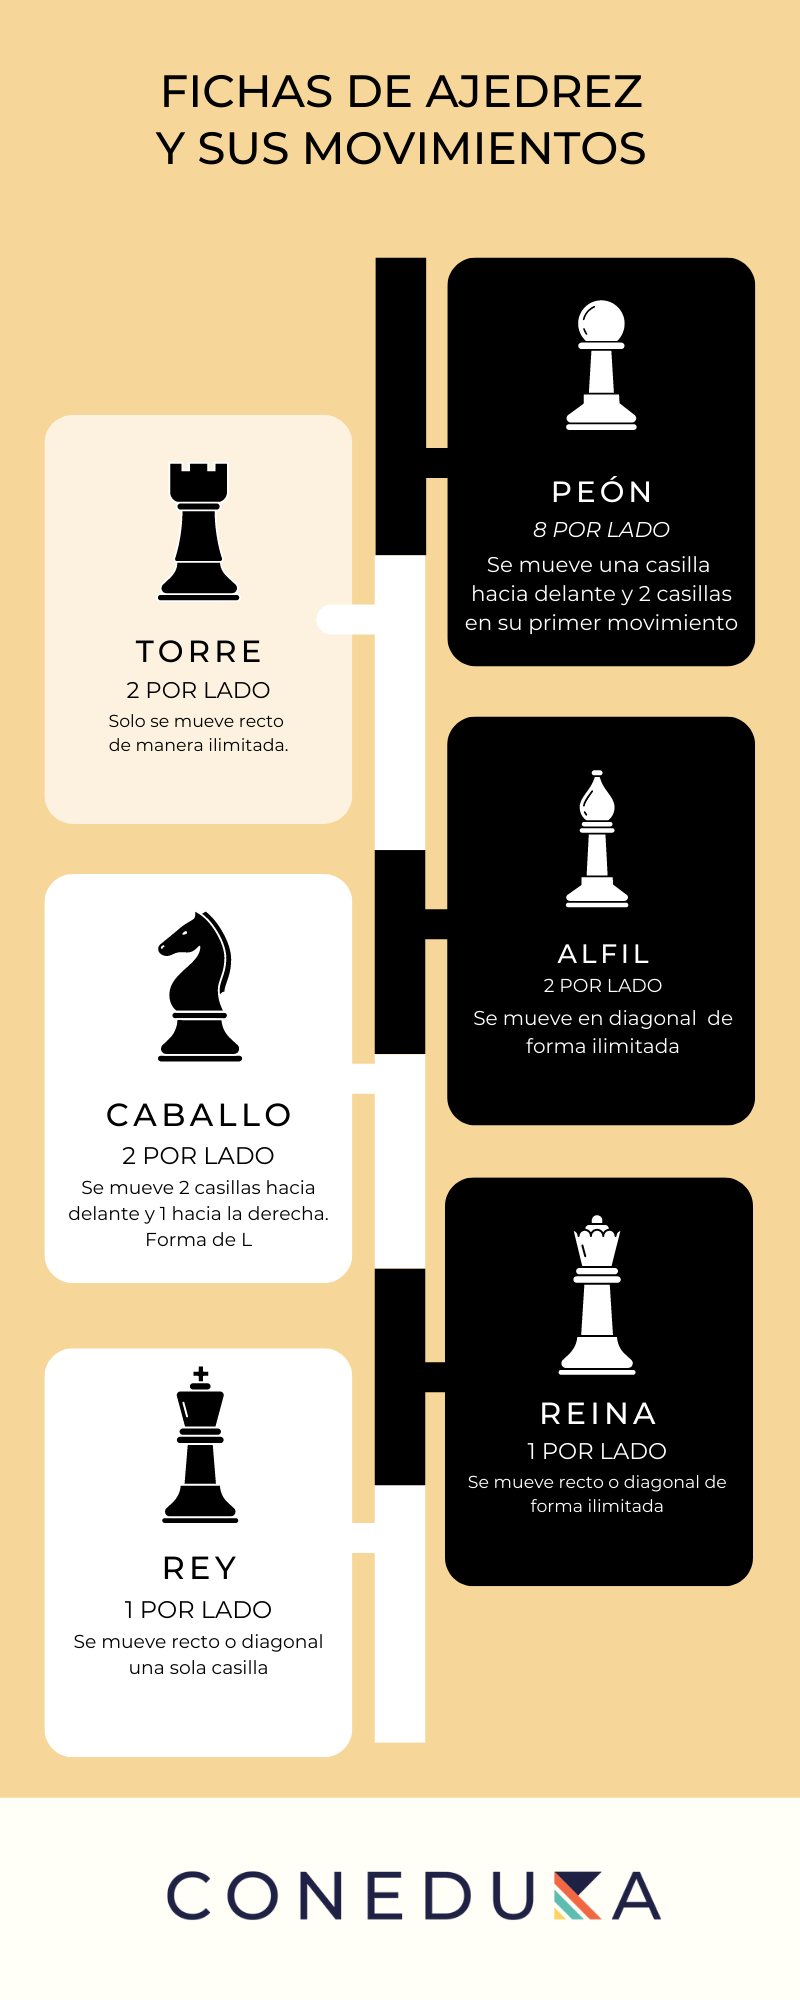 Reglas del ajedrez: ¿cómo jugar al ajedrez?